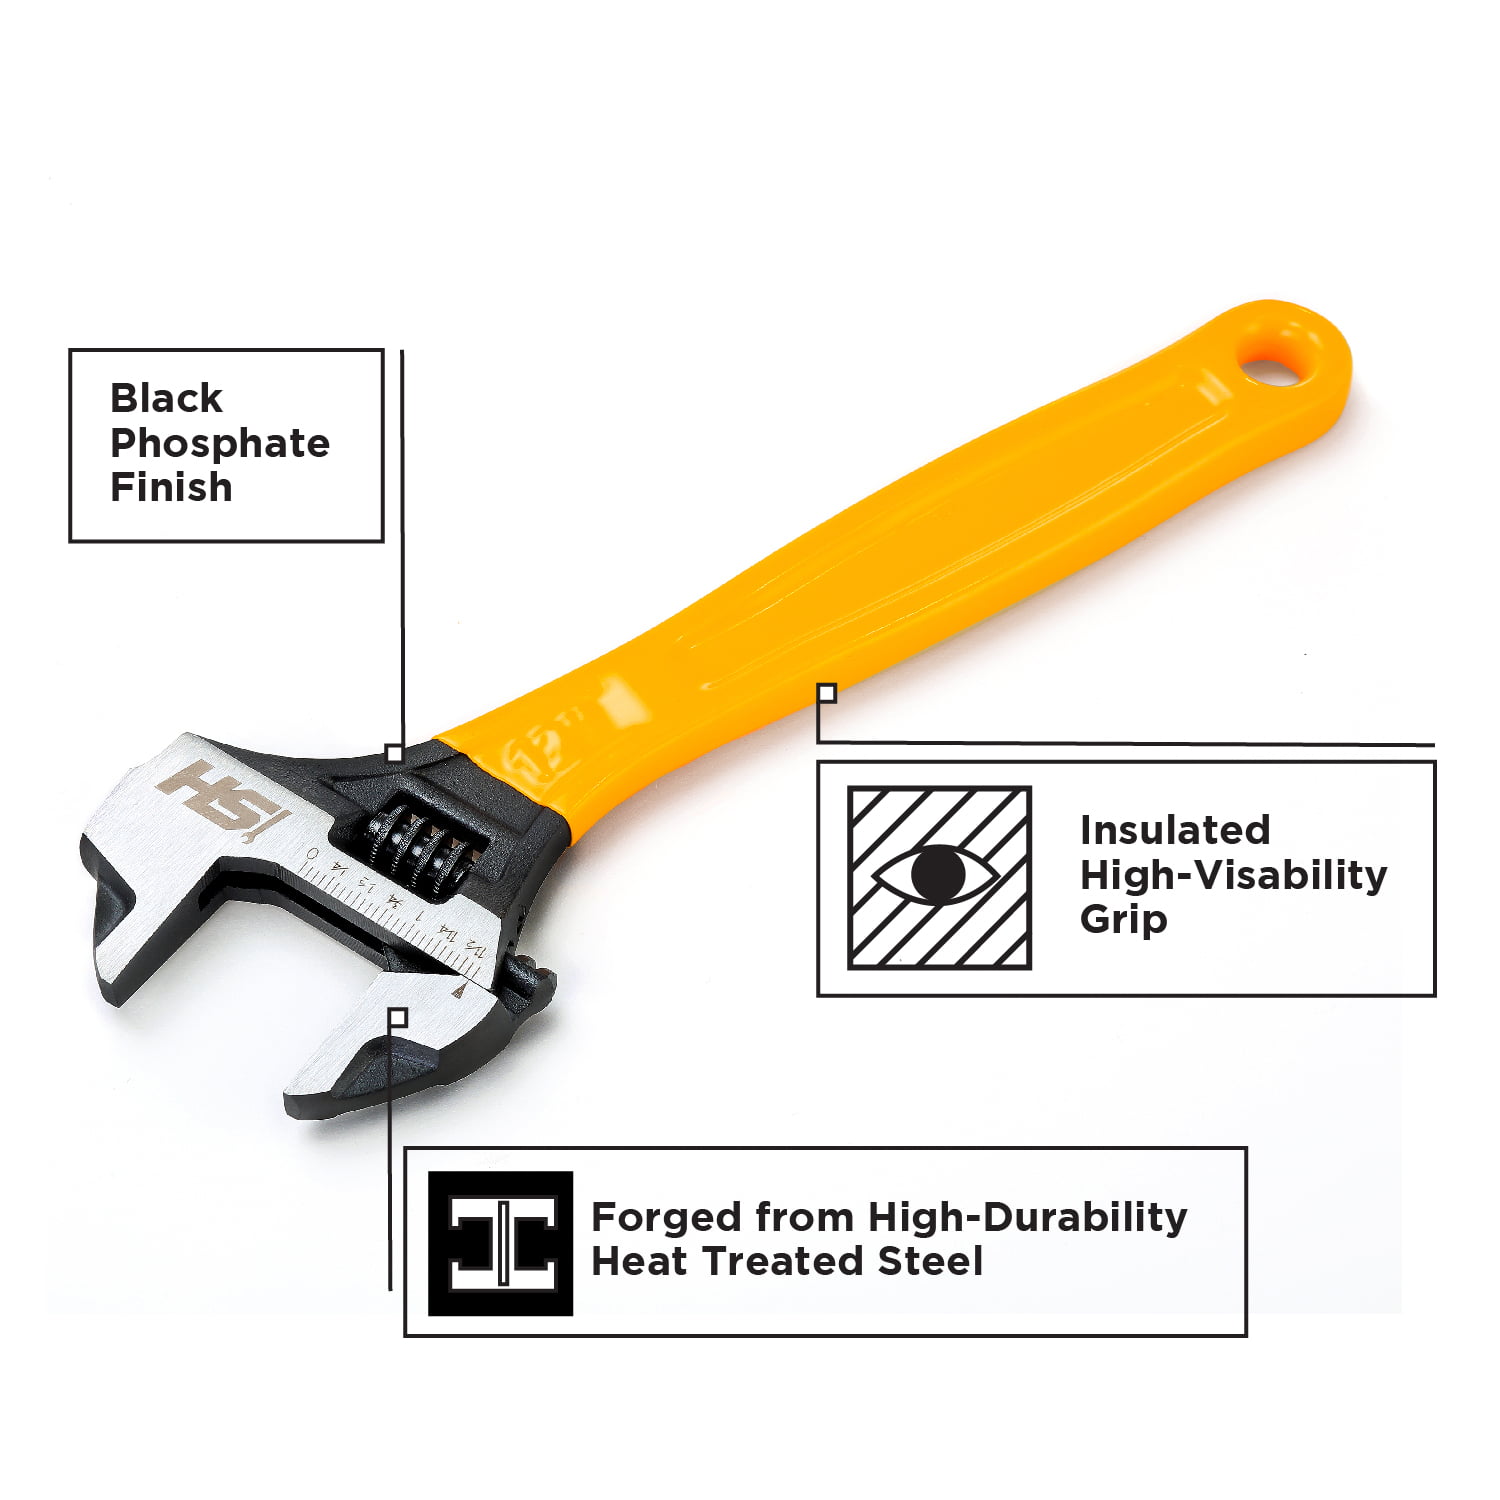 Black Phosphate Finish STEELHEAD 6” Wide-Mouth Adjustable HAMMERHEAD Wrench 